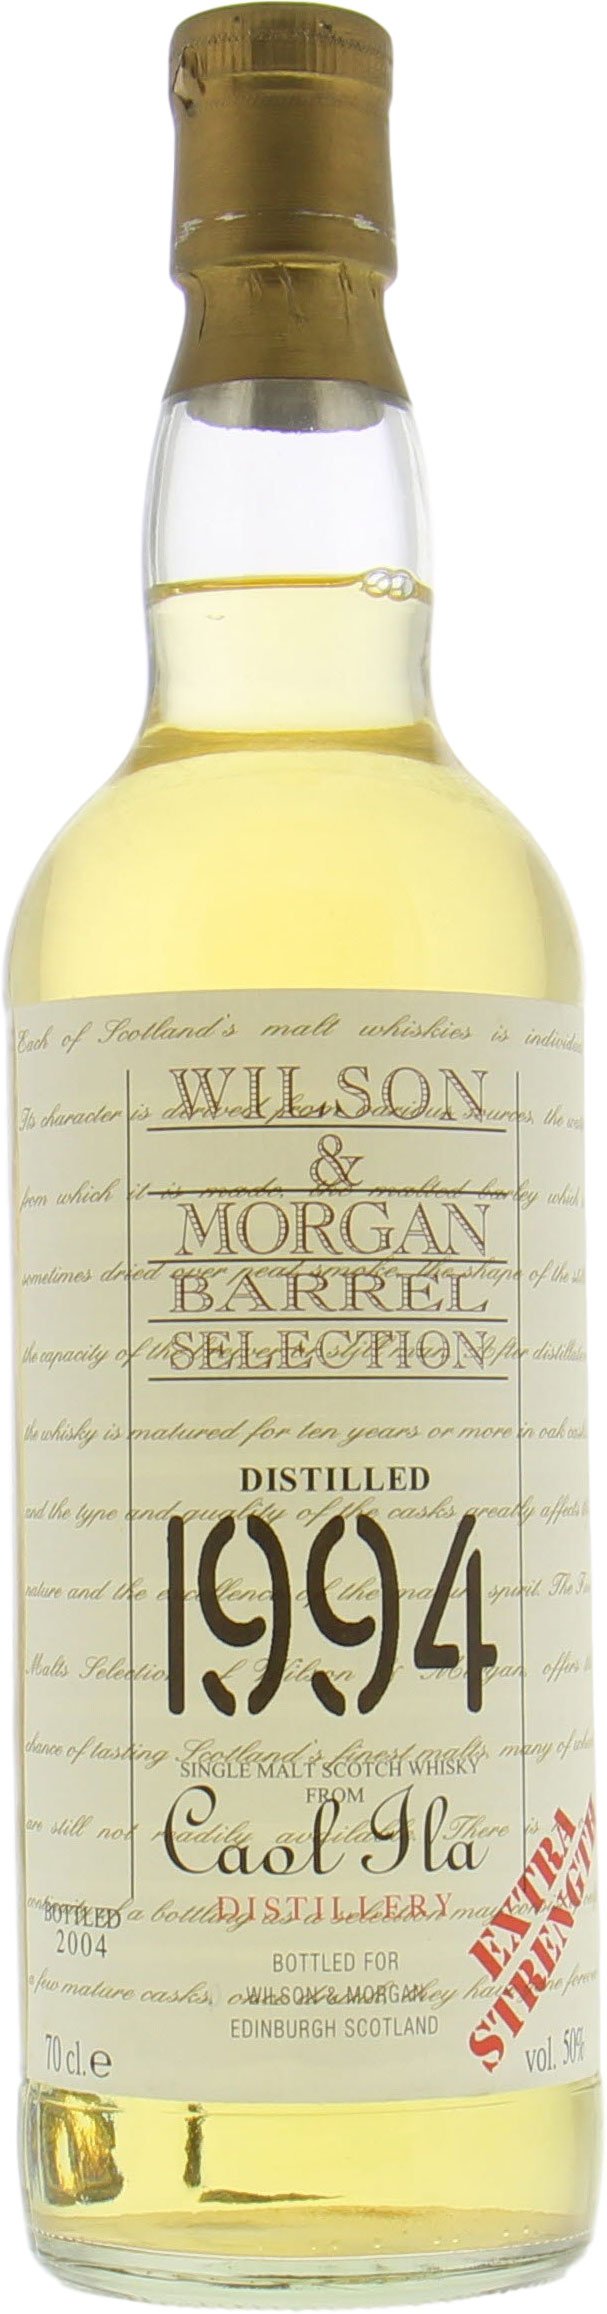 Caol Ila - 10 Years Old Wilson & Morgan 50% 1994 No Original Container Included!